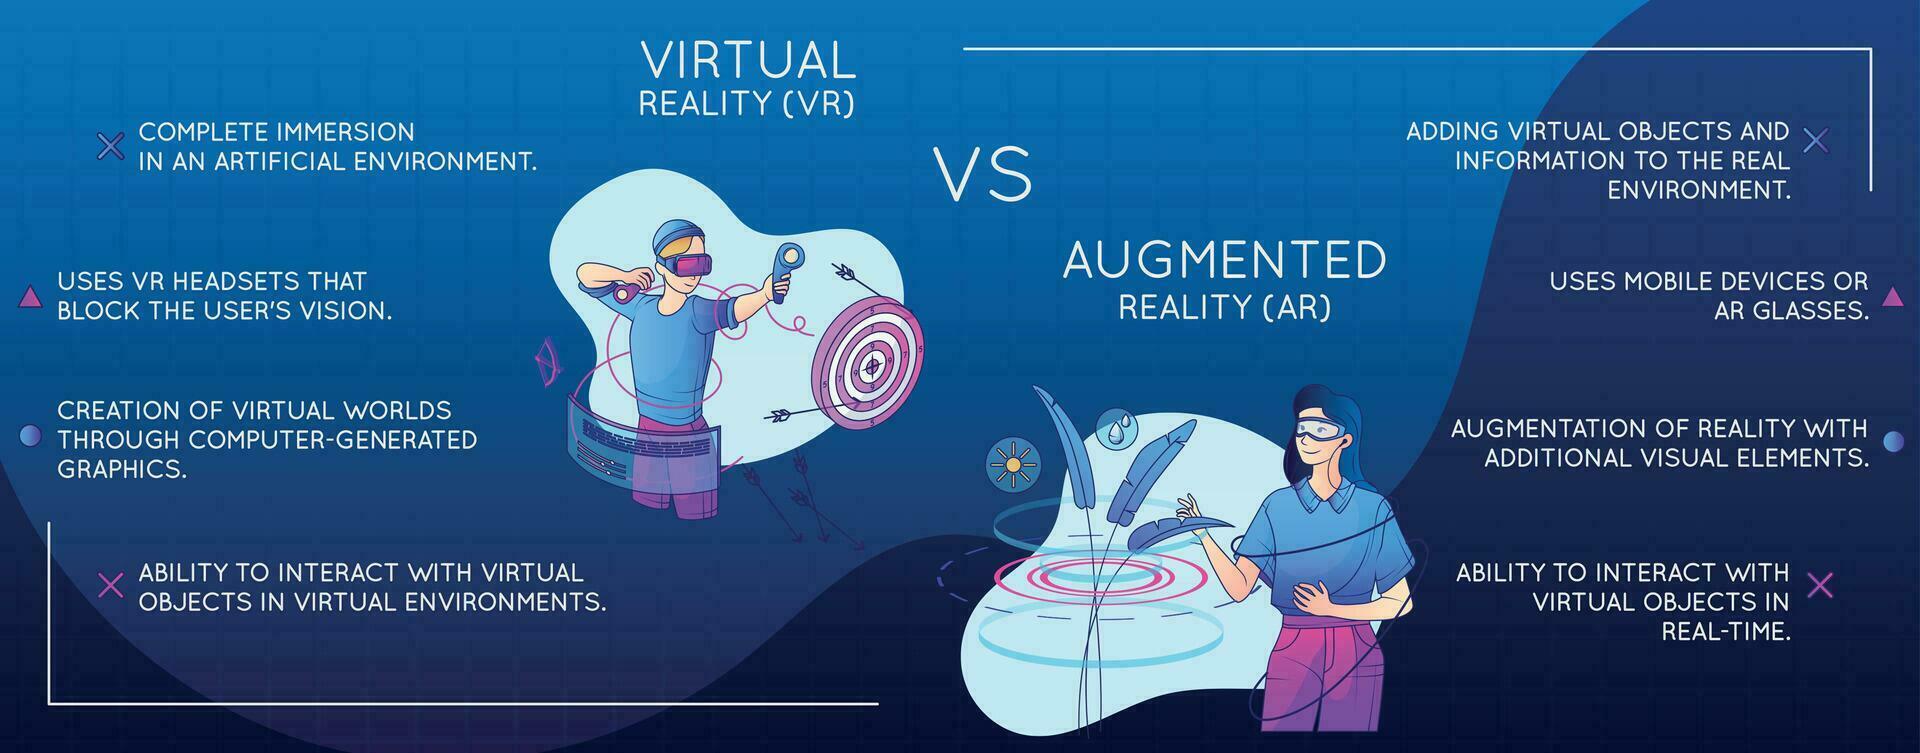 virtuell erweitert Wirklichkeit Infografik vektor